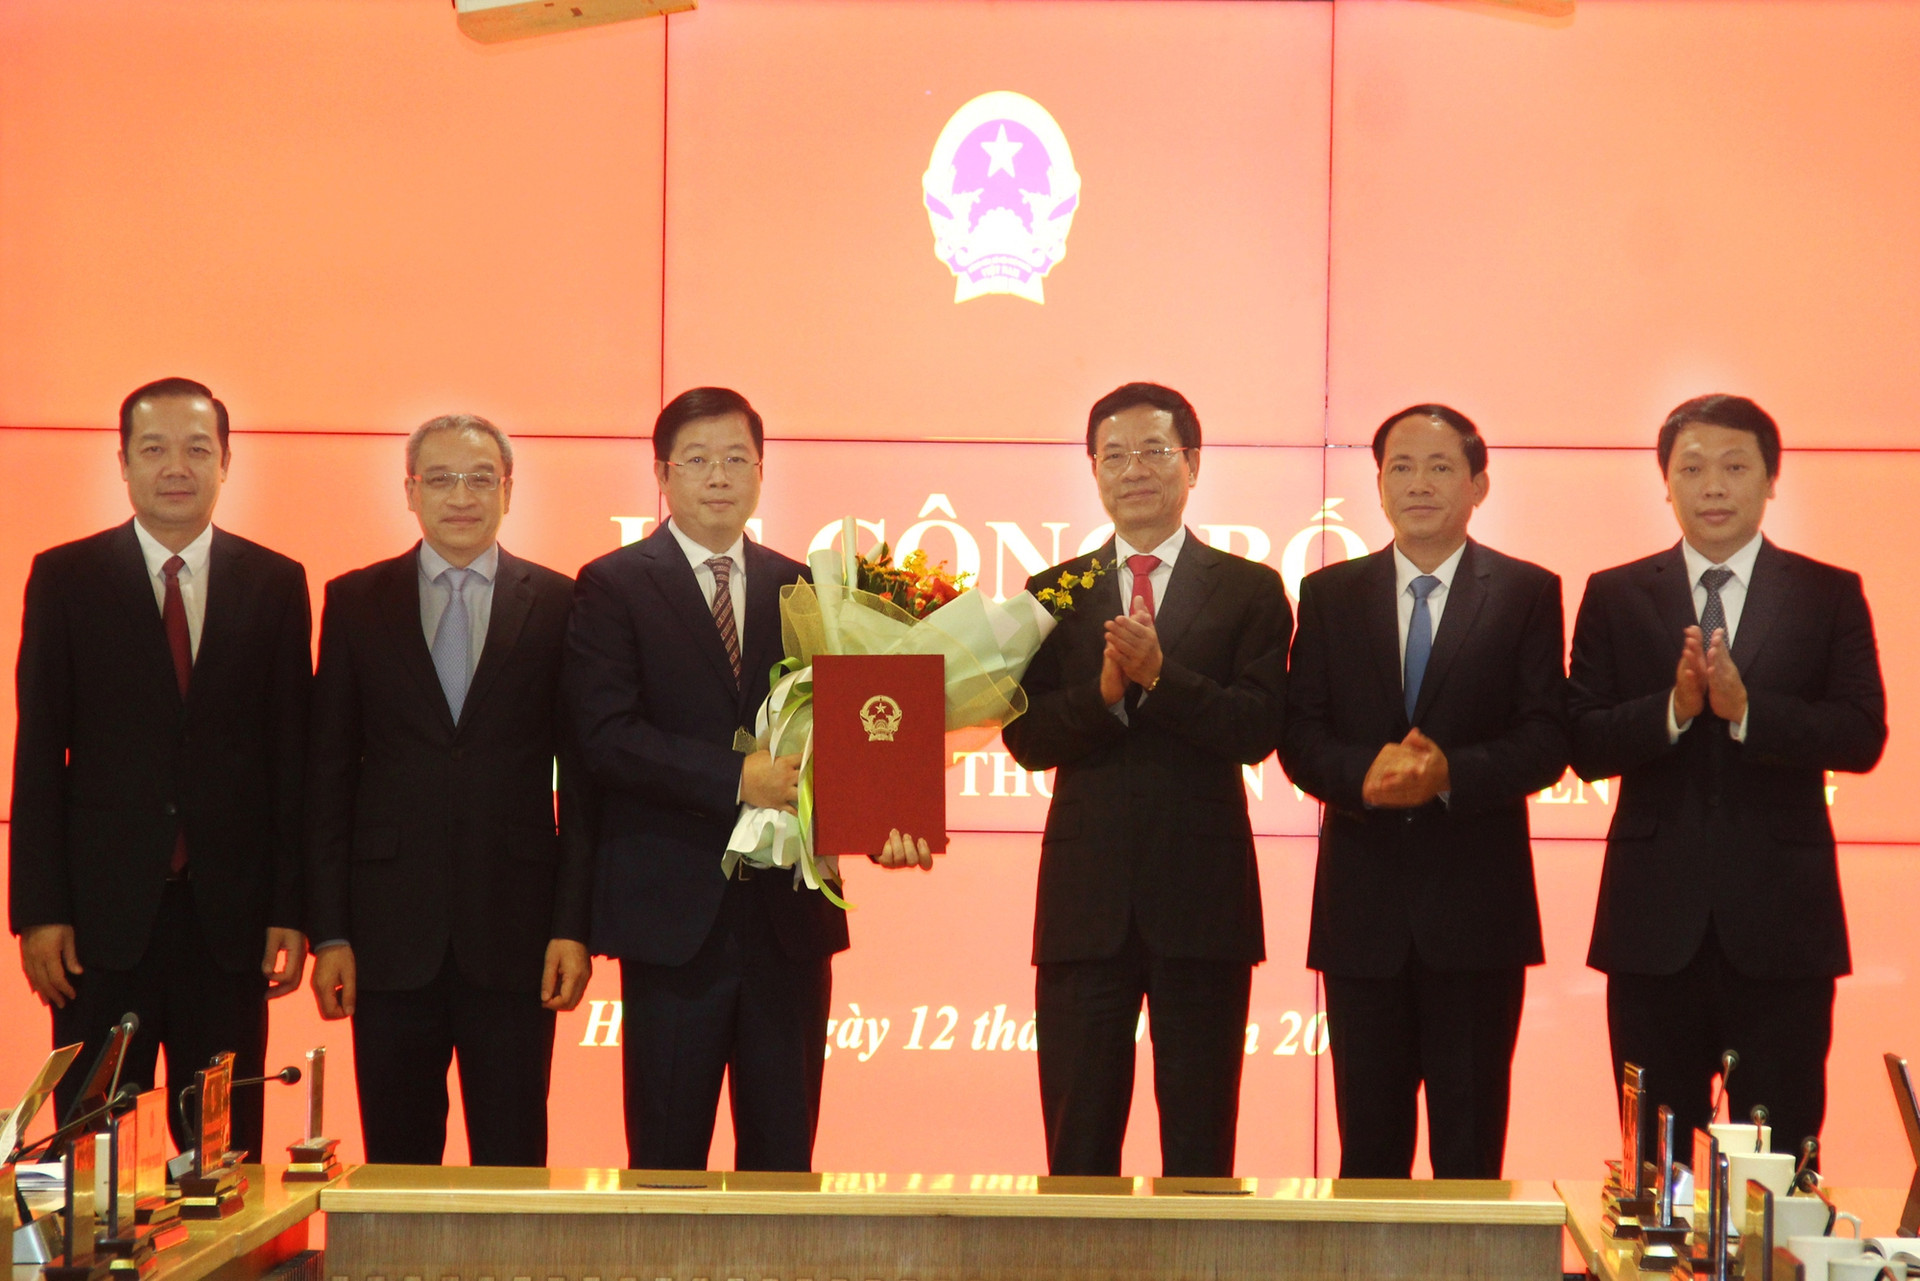 Bộ TT&TT công bố bổ nhiệm ông Nguyễn Thanh Lâm làm Thứ trưởng Bộ TT&TT - Ảnh 2.